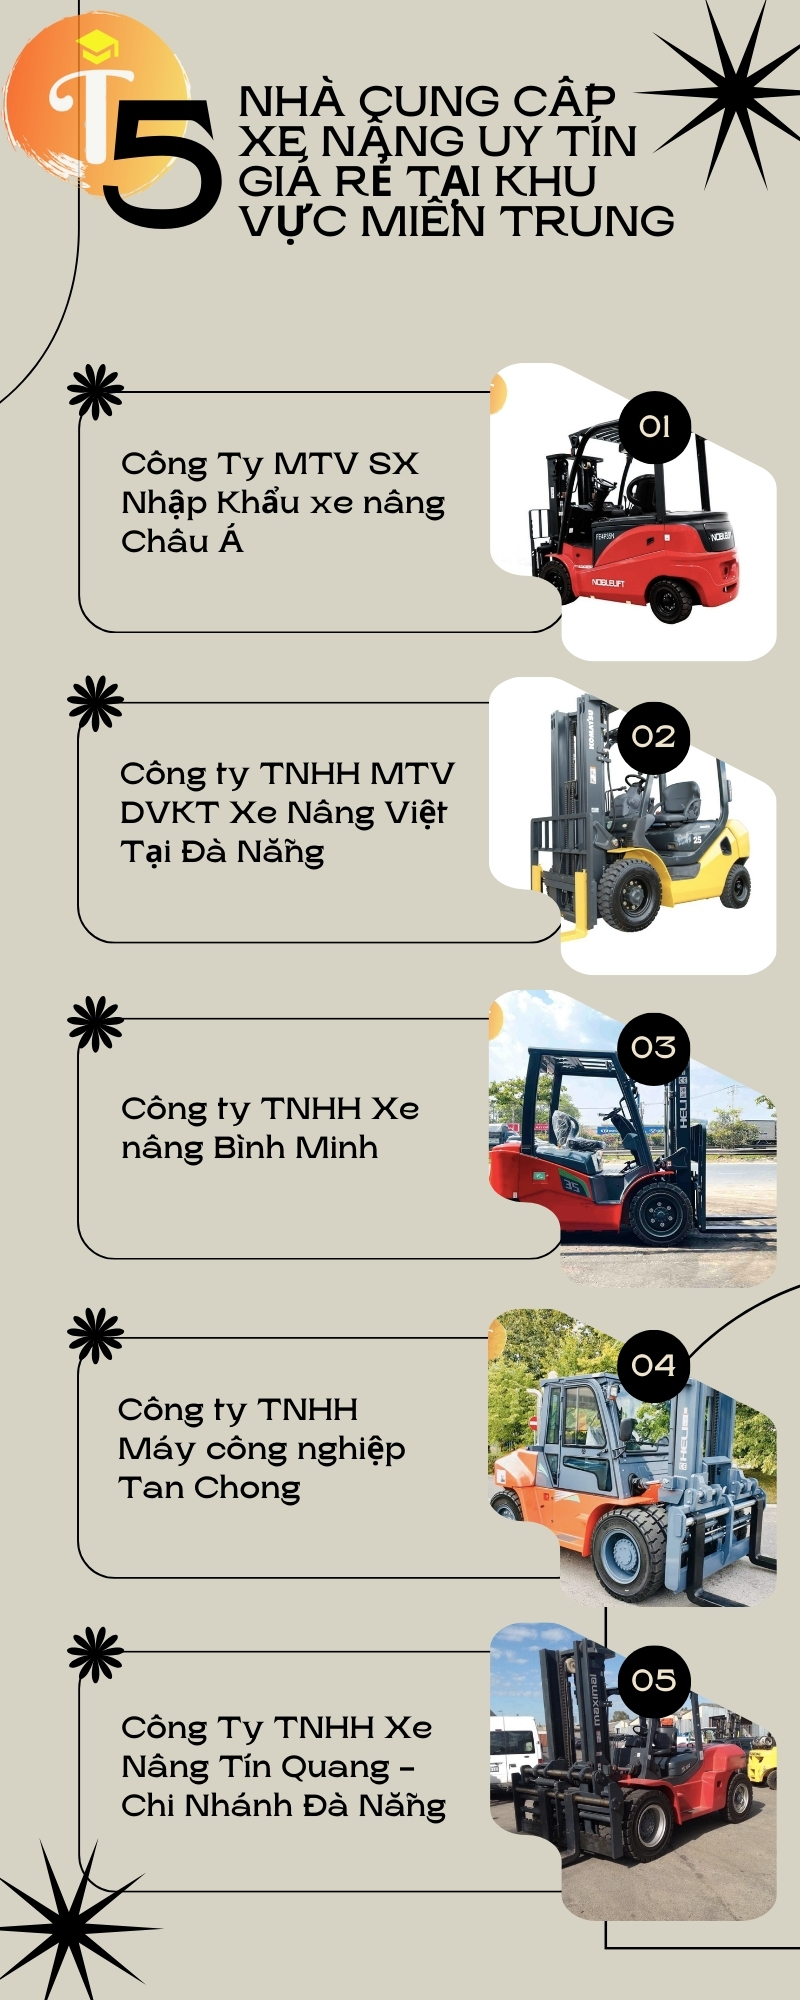 Top 5 Nhà Cung Cấp Phân Phối Xe Nâng Uy Tín Giá Rẻ, dòng xe nâng an toàn chống cháy nổ tại Quảng Nam - Đà Nẵng